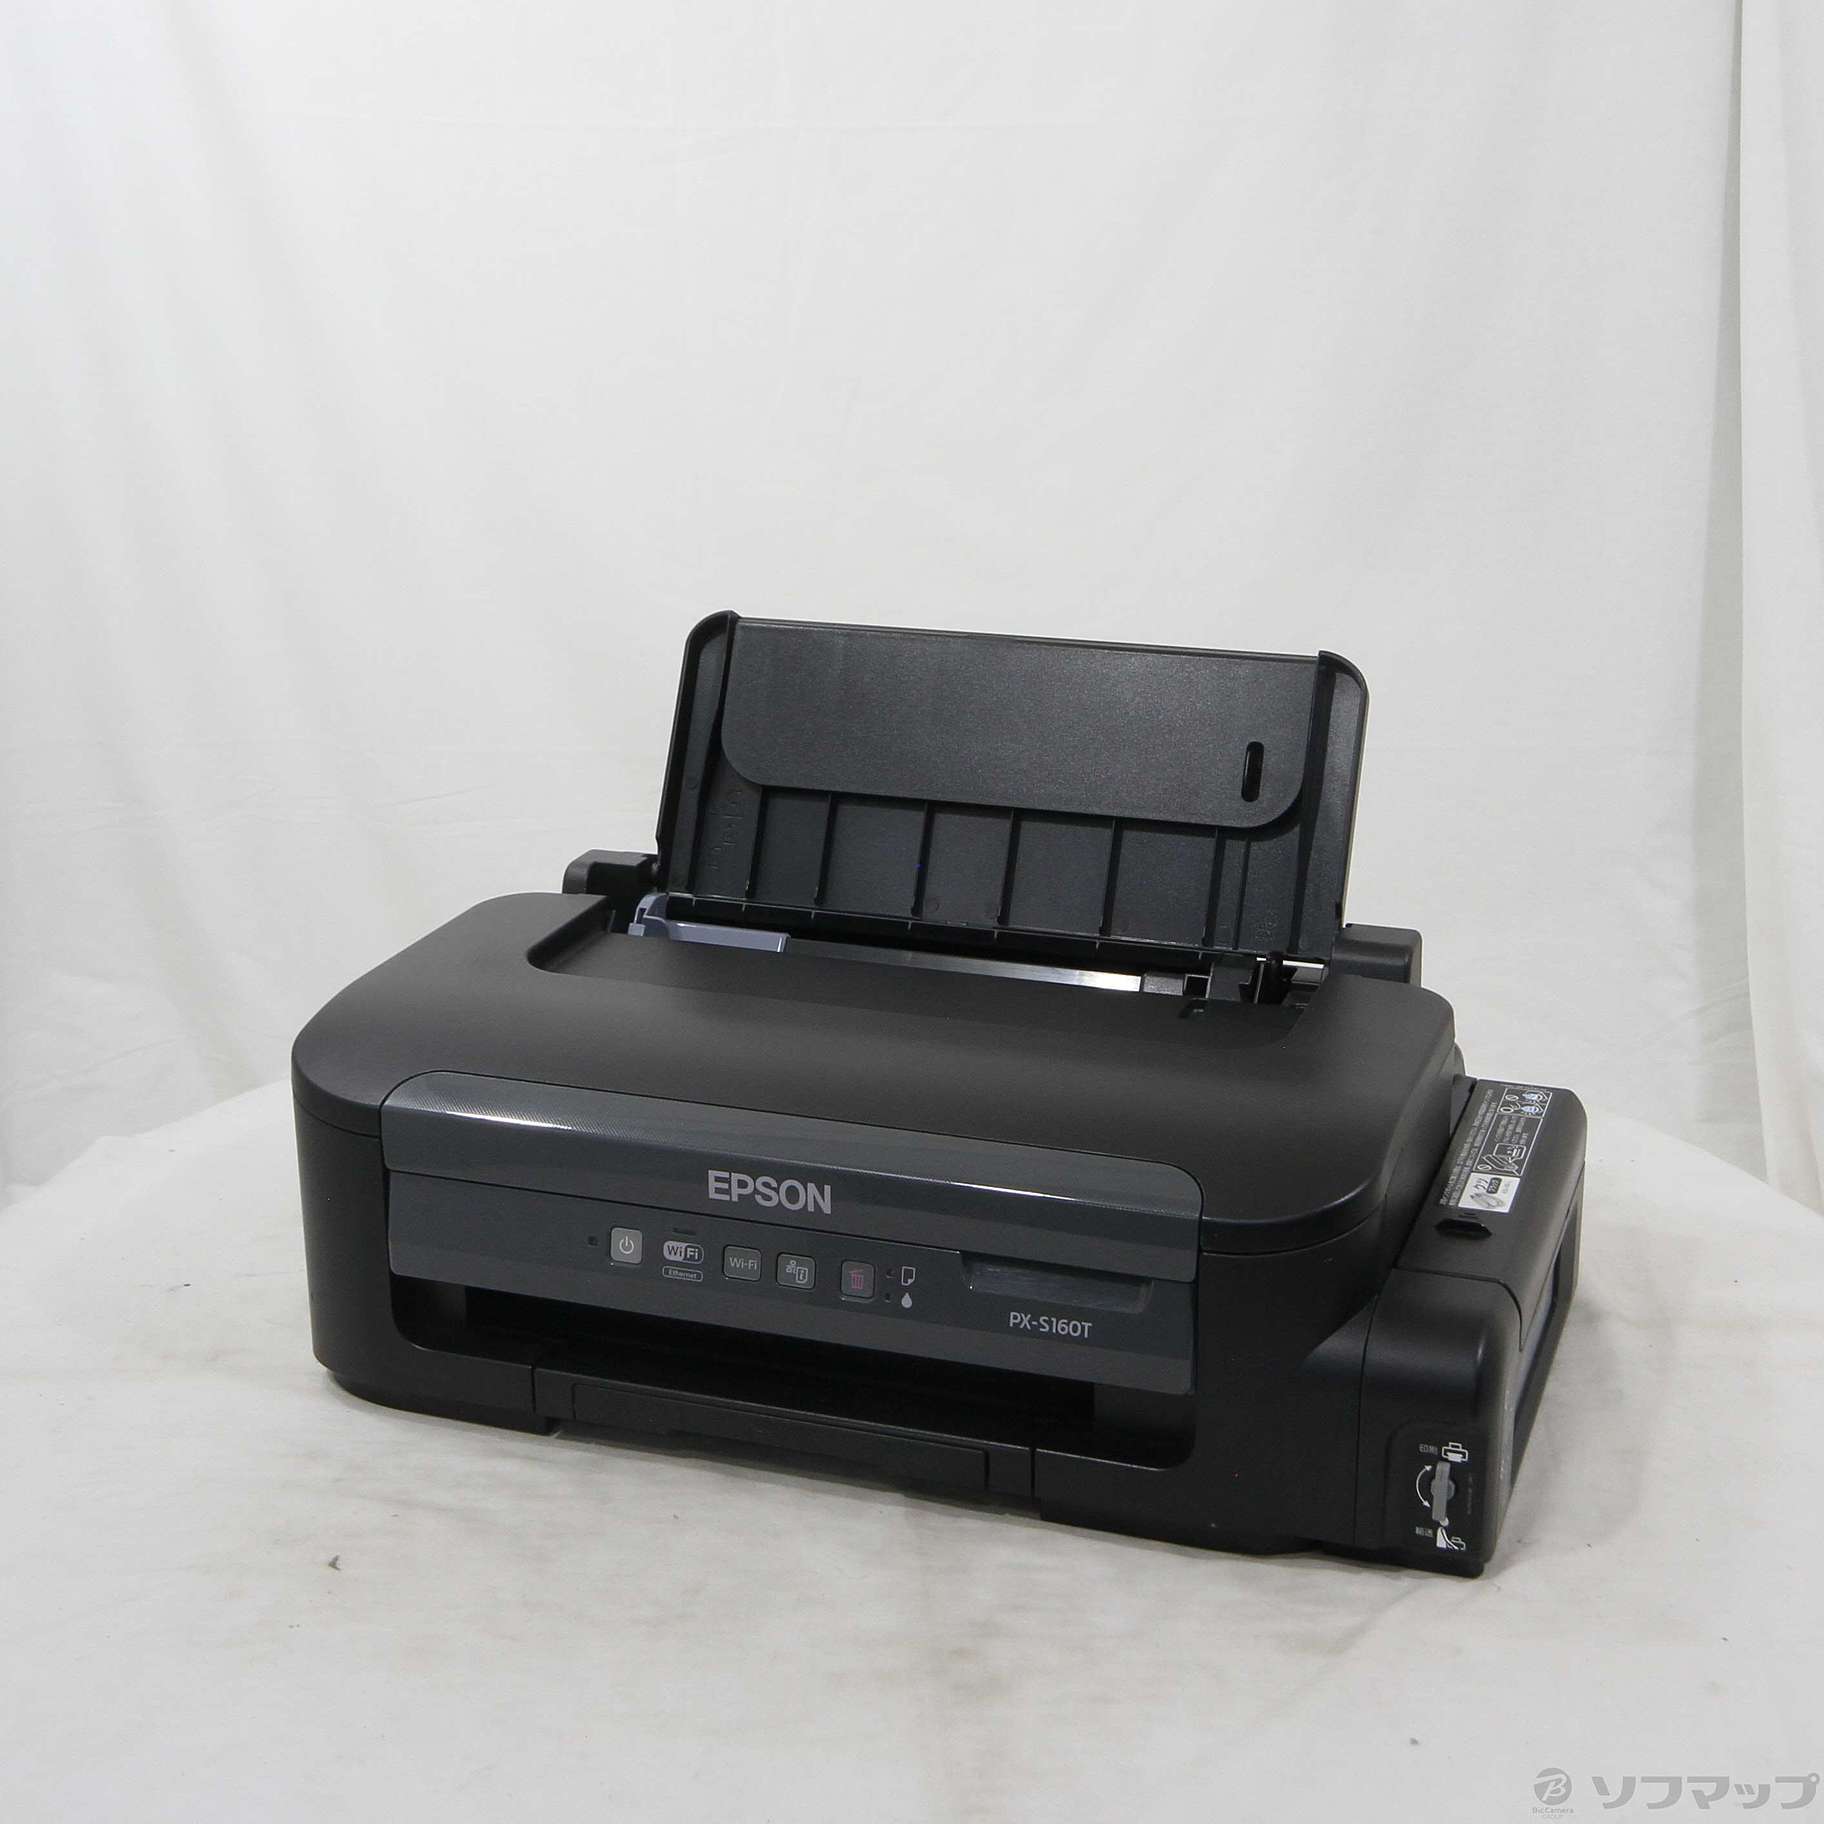 即購入OK 】EPSON PX-S160T プリンター 白黒印刷 - PC/タブレット